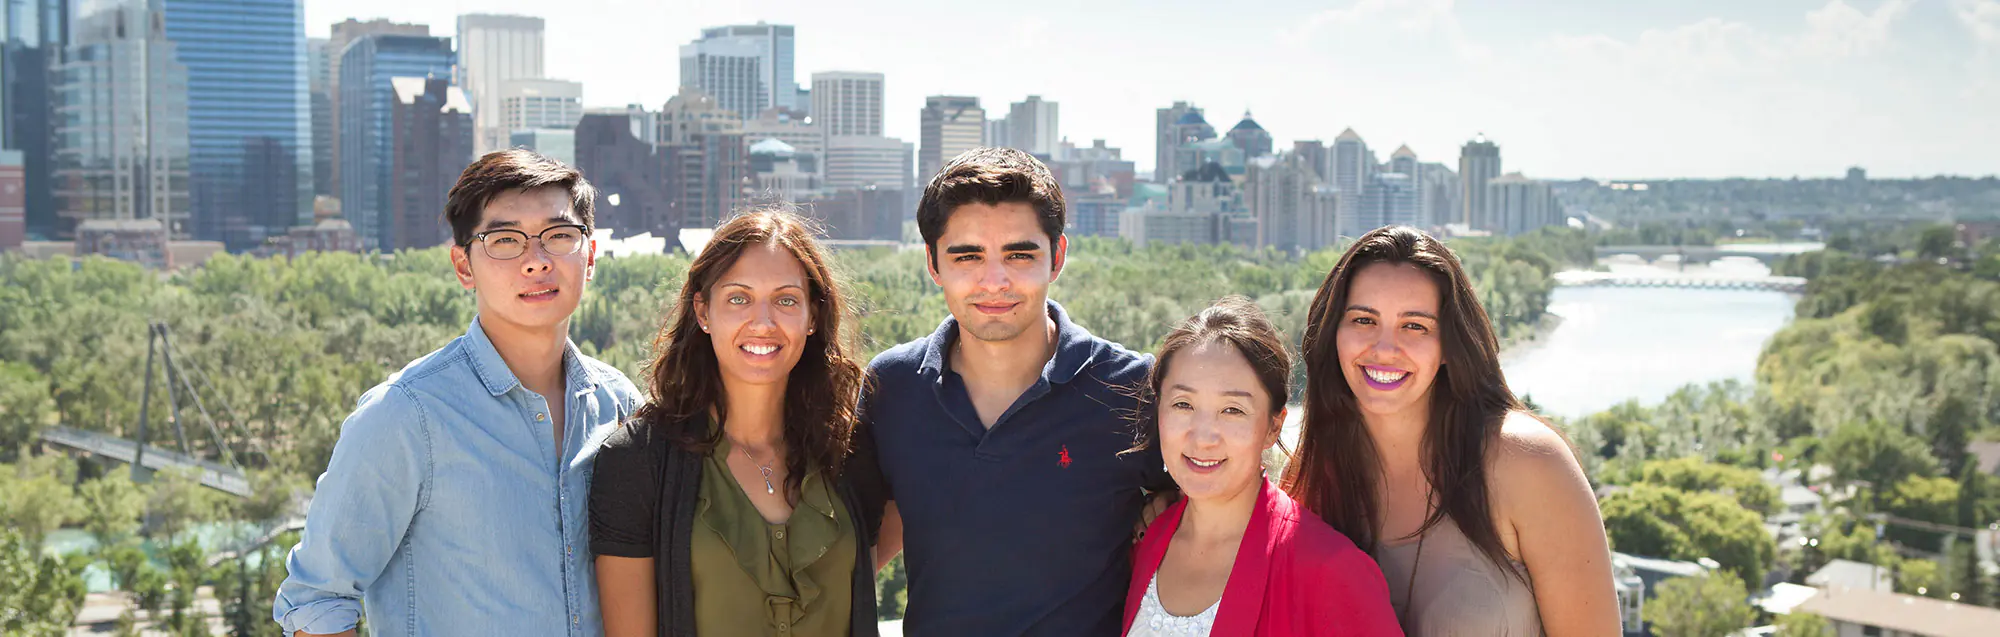 Valutazioni dei nostri ex studenti su Global Village Calgary 